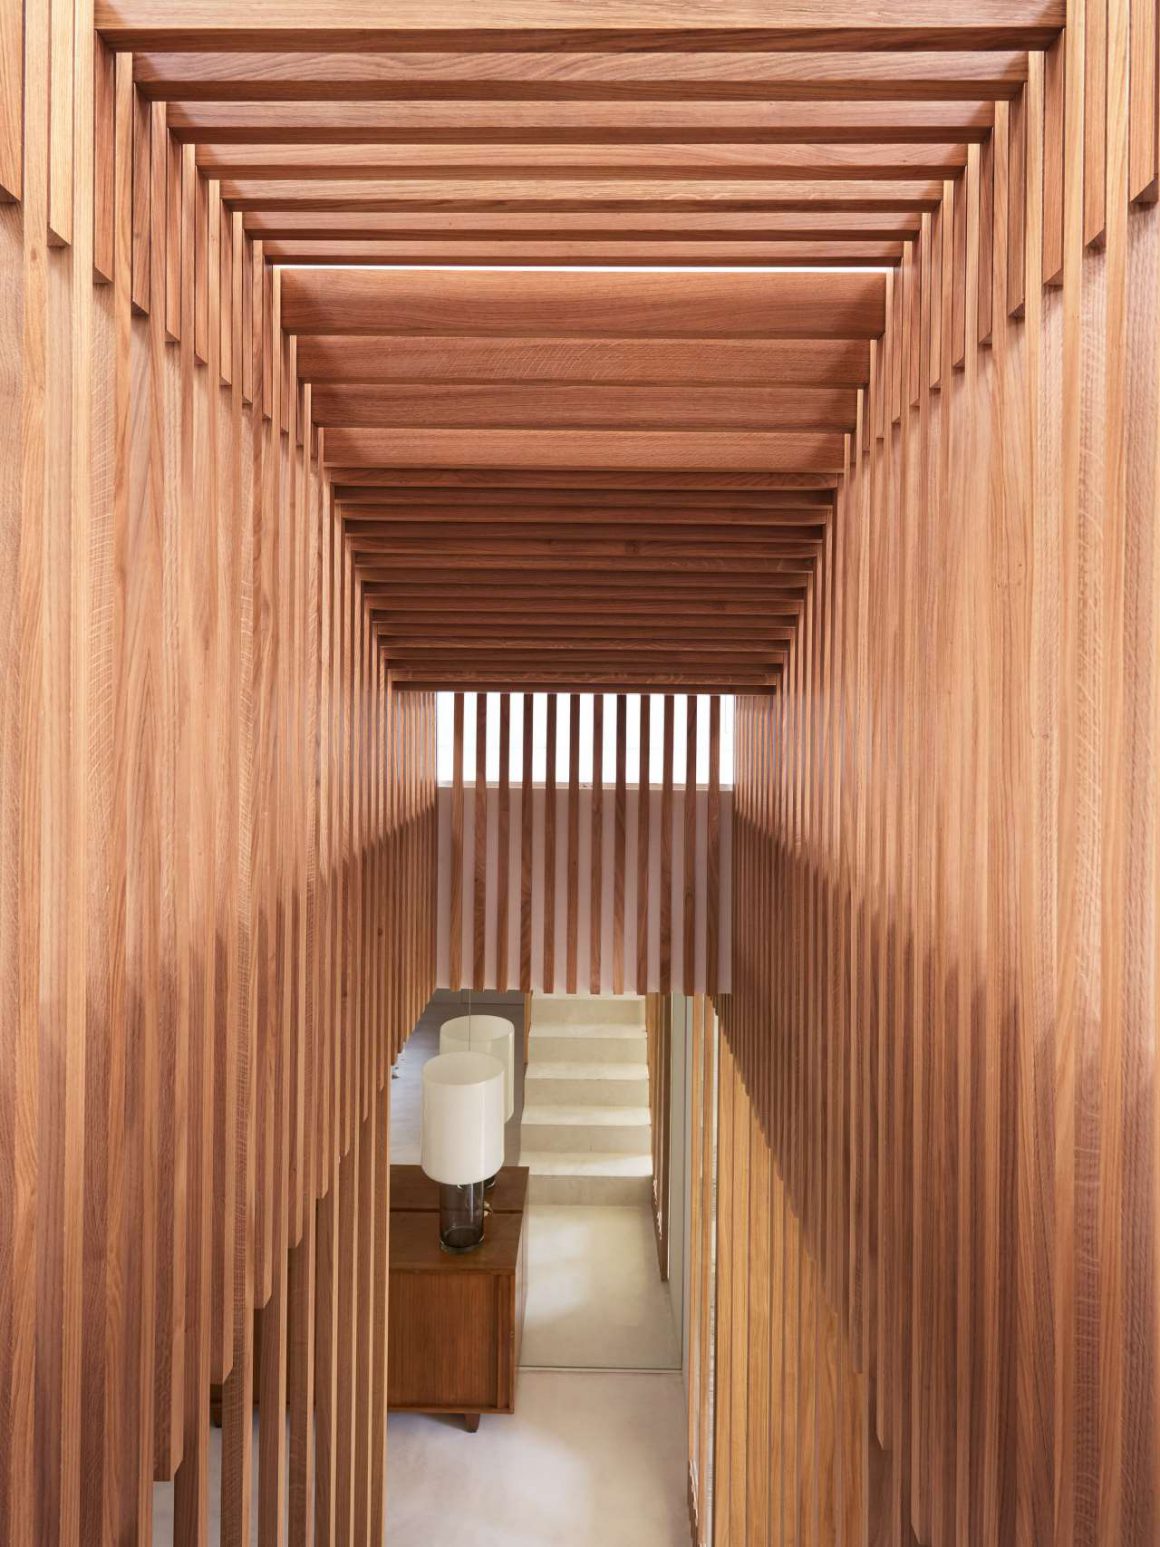 Couloir de l'escalier avec reflet des marches dans un miroir en face de lui qui ajoute de la profondeur. Un corps en bois pour un aspect design qui fait écho aux vieux appartements haussmanniens et aux escaliers de bateaux. 